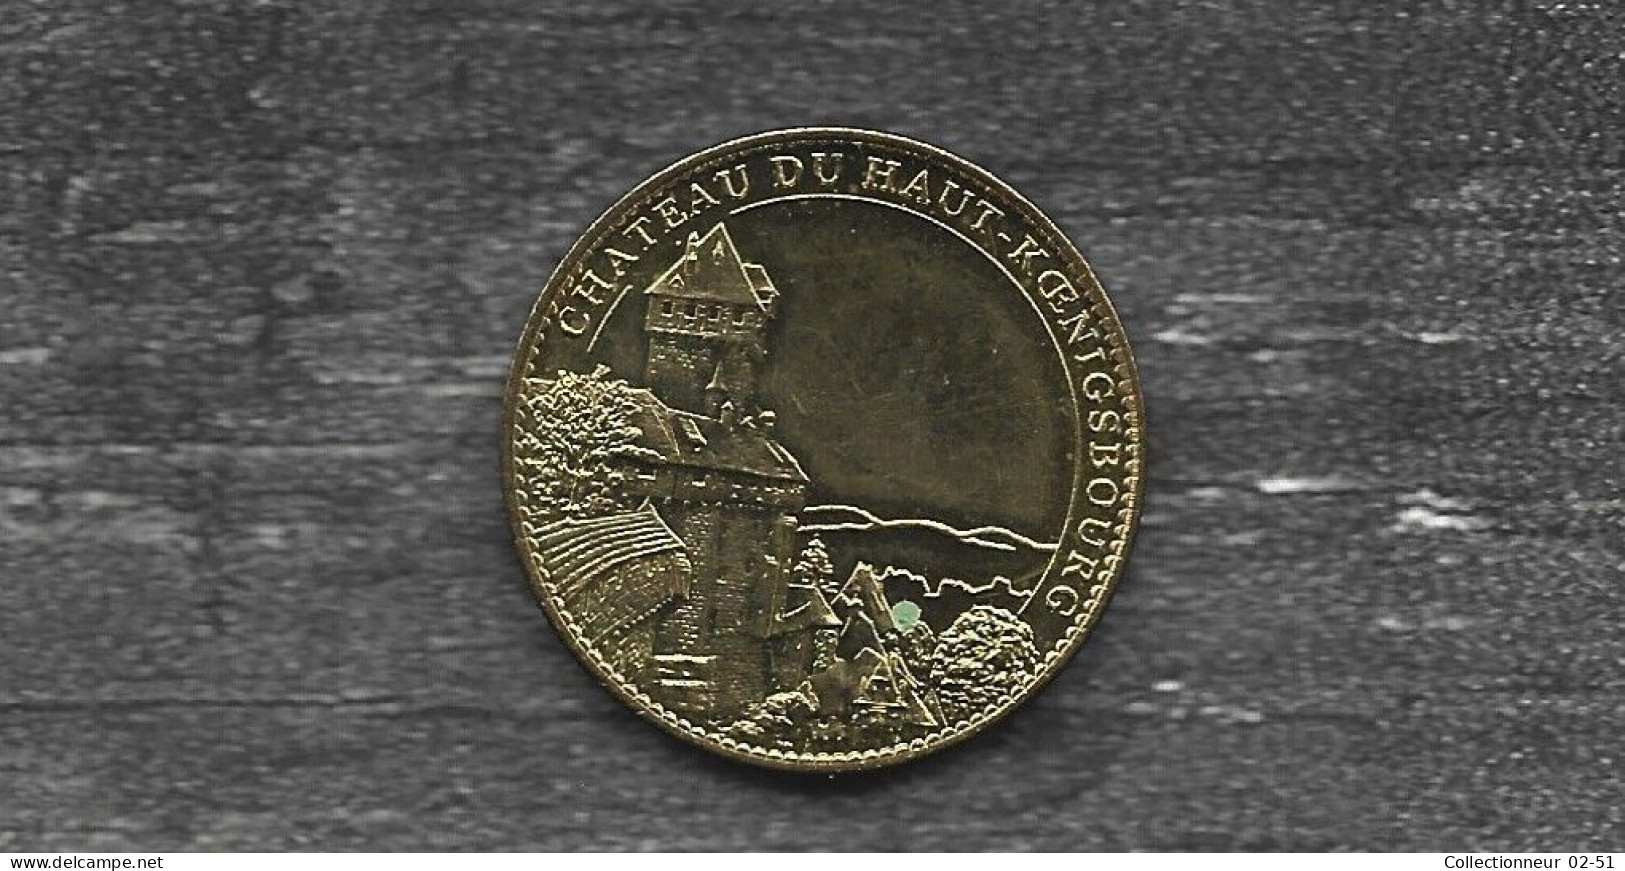 Monnaie Arthus Bertrand : Château Du Haut-Koenigsbourg - Le Donjon - 2010 - 2010